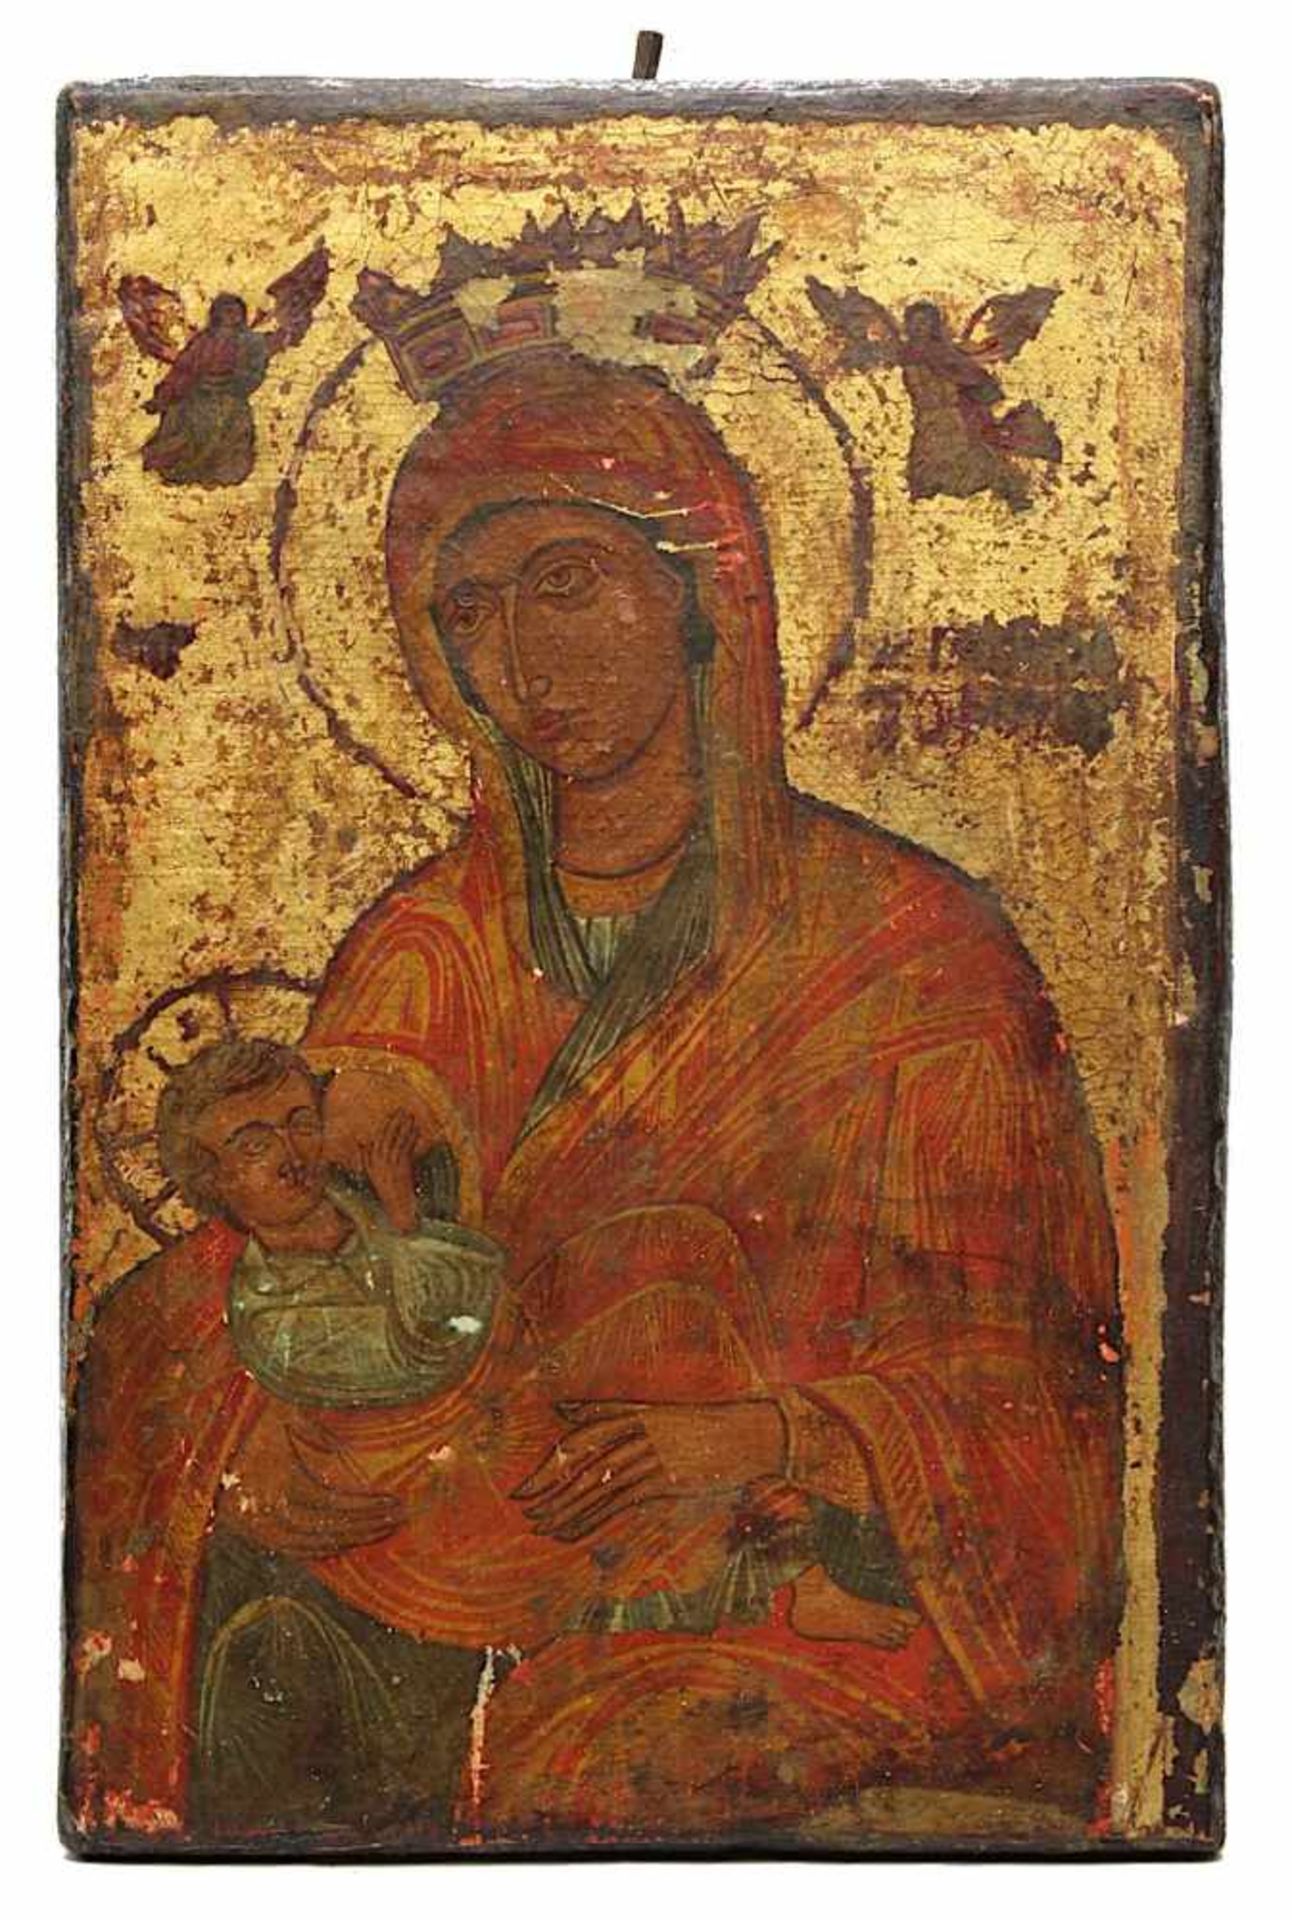 Ikone - Nährende Gottesmutter, wohl Griechenland, 17./18. Jh., Tempera auf Holz, wohl Teil einer